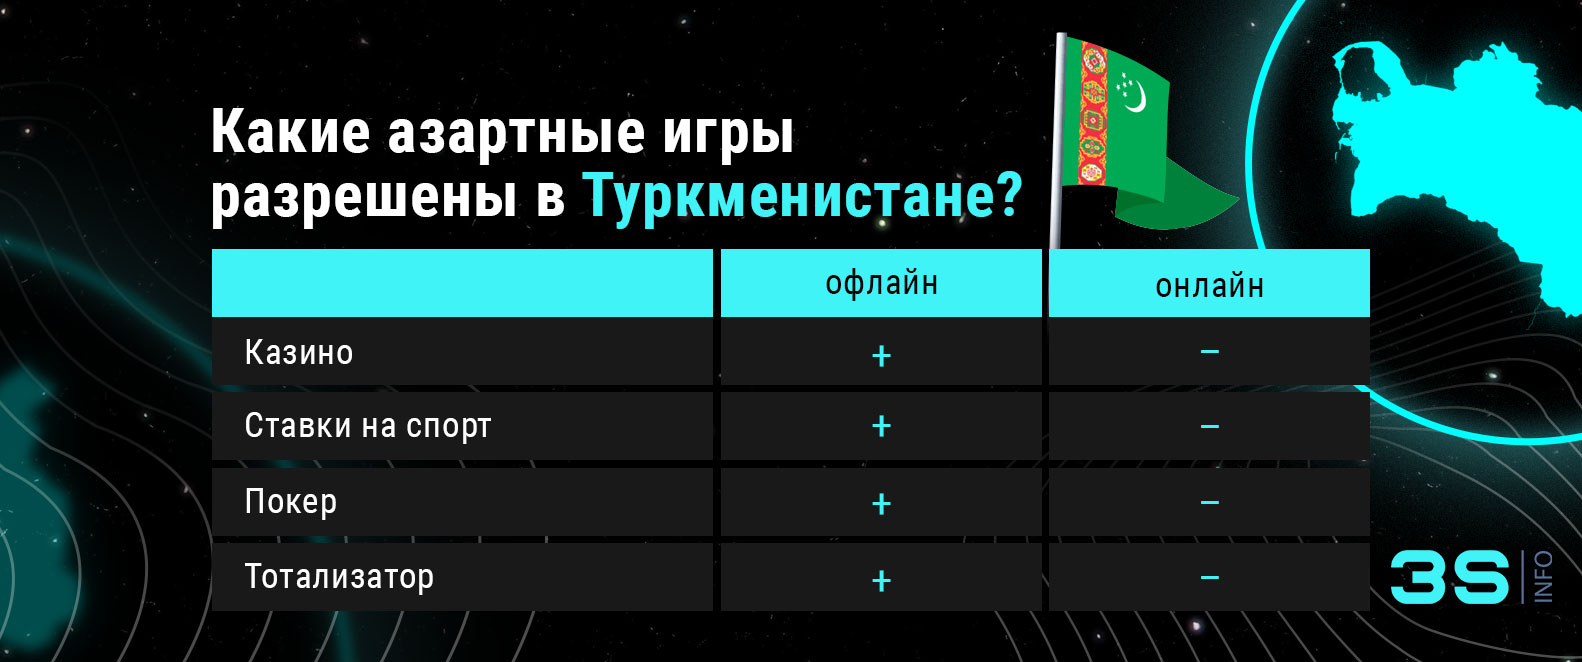 Какие азартные игры разрешены в Туркменистане? Все подробности на 3Snet